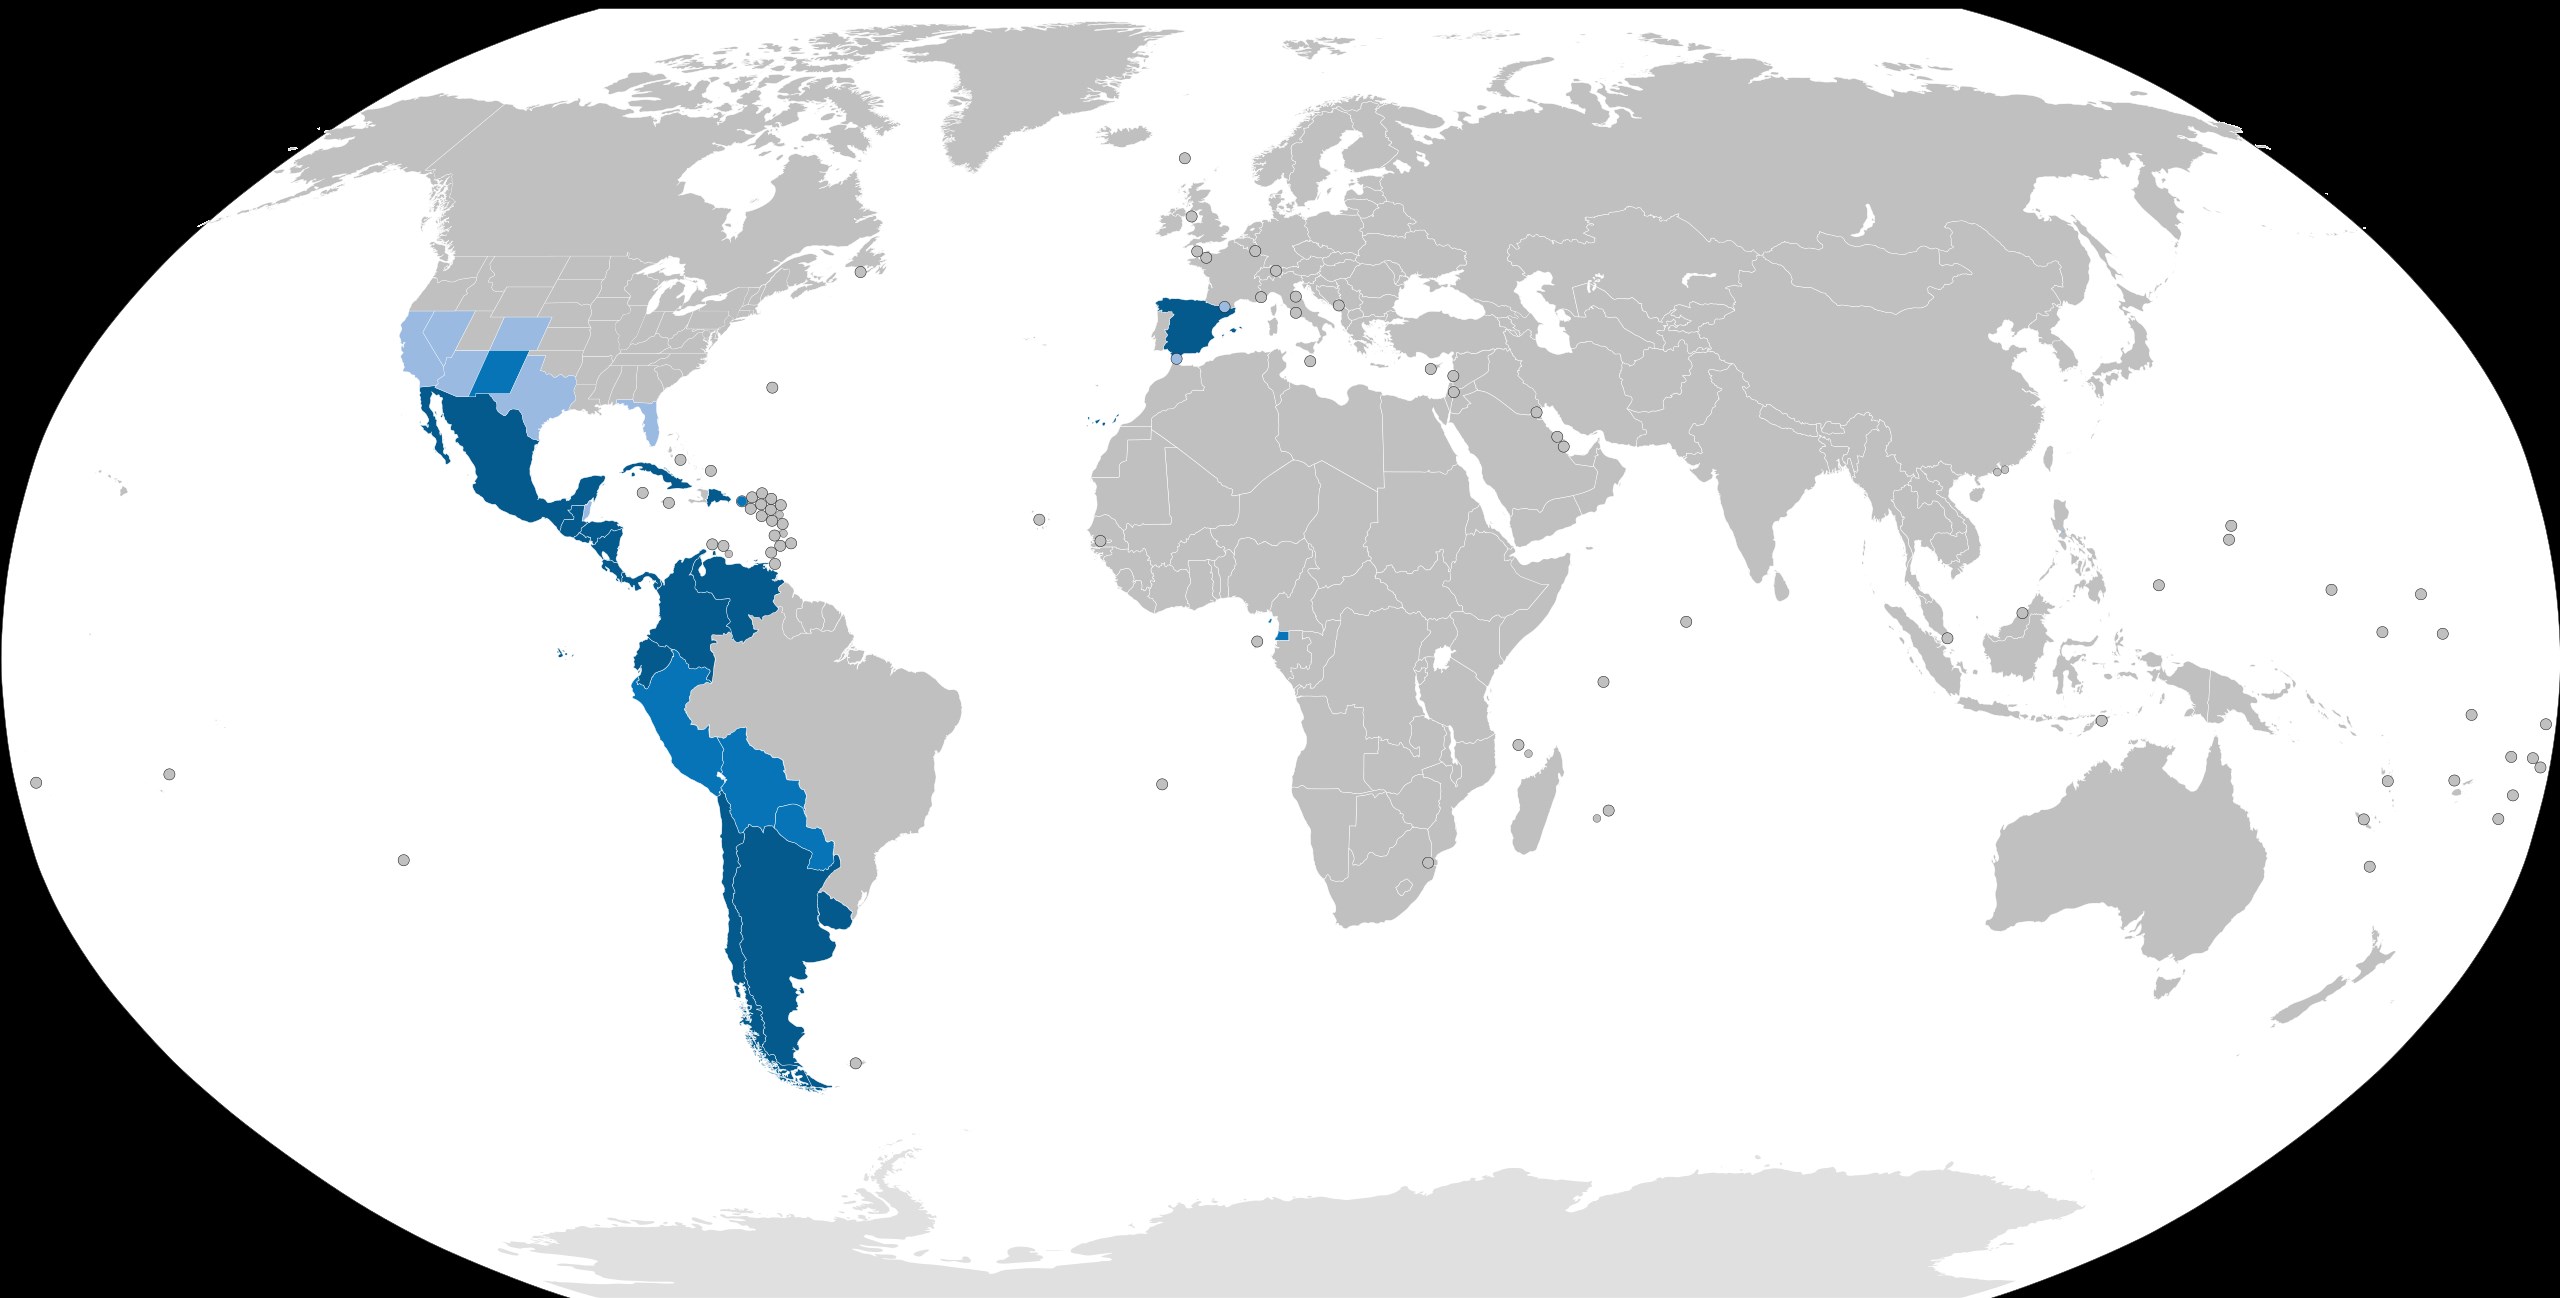 ispanyolca dili konuşan ülkeler haritası